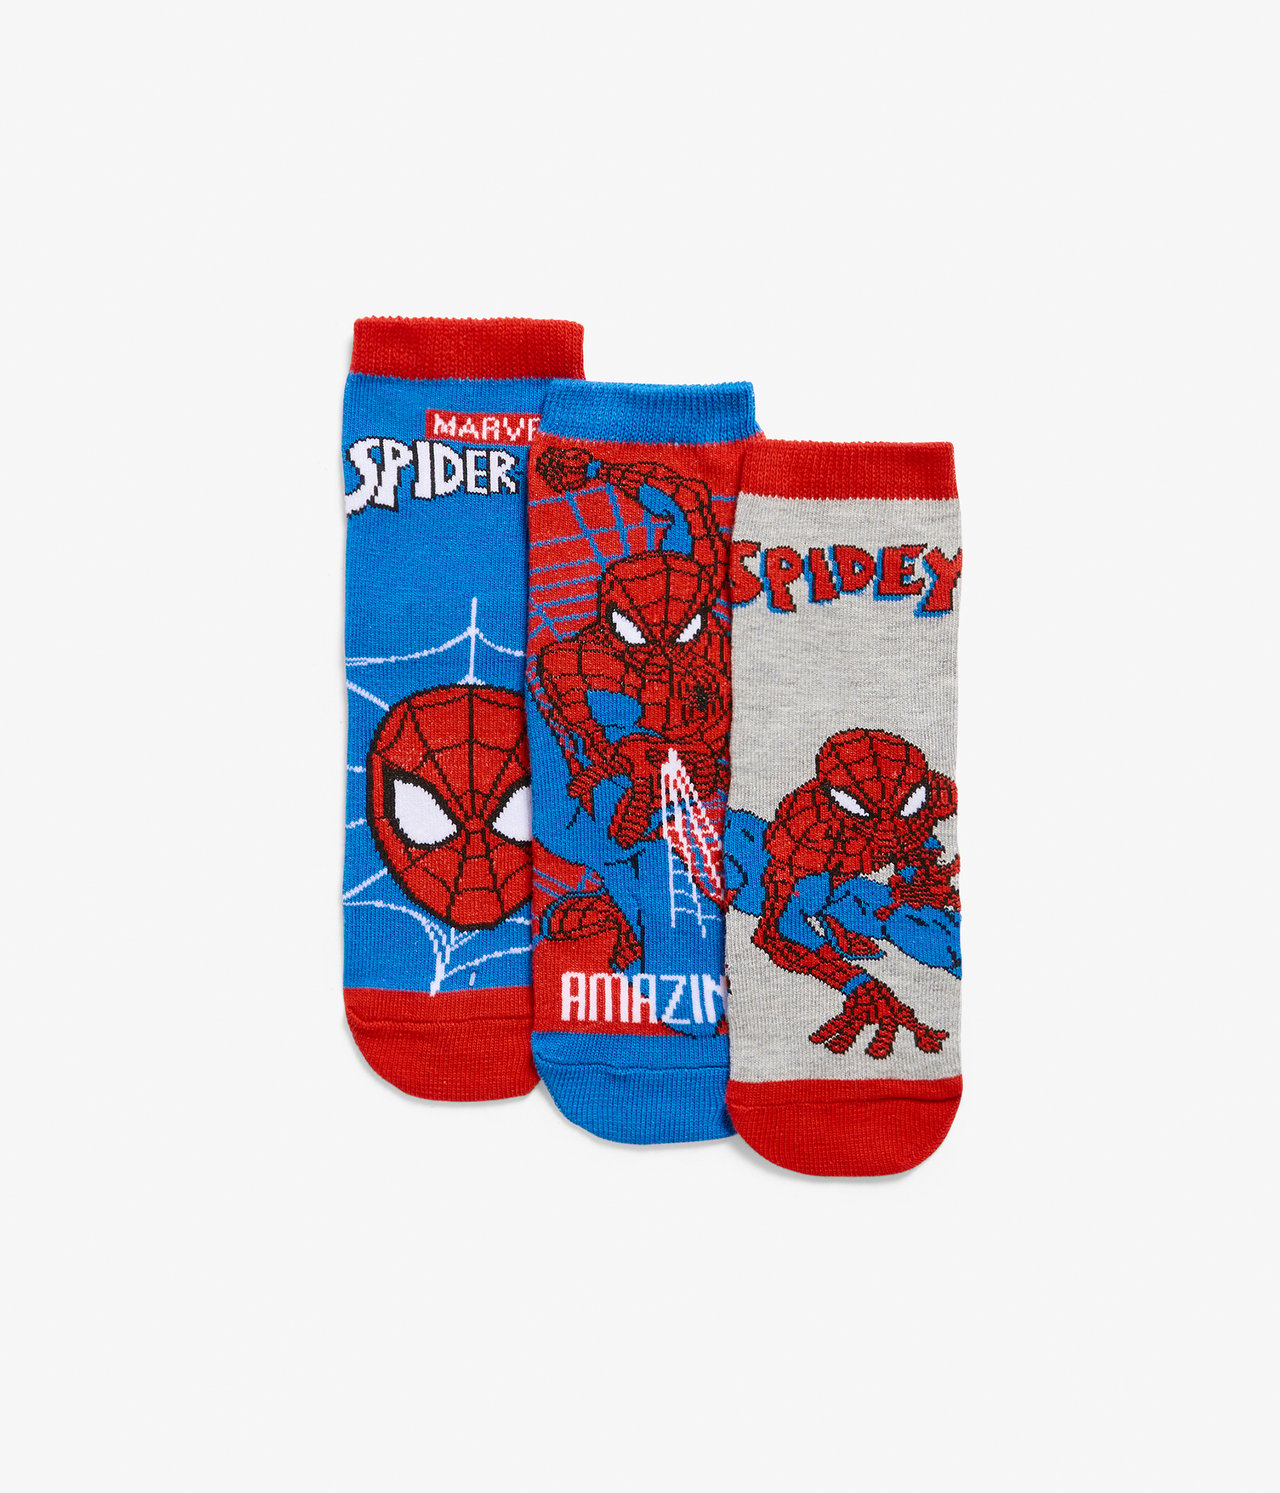 Hämähäkkimies-sukat, 3 parin pakkaus - Sininen - 1